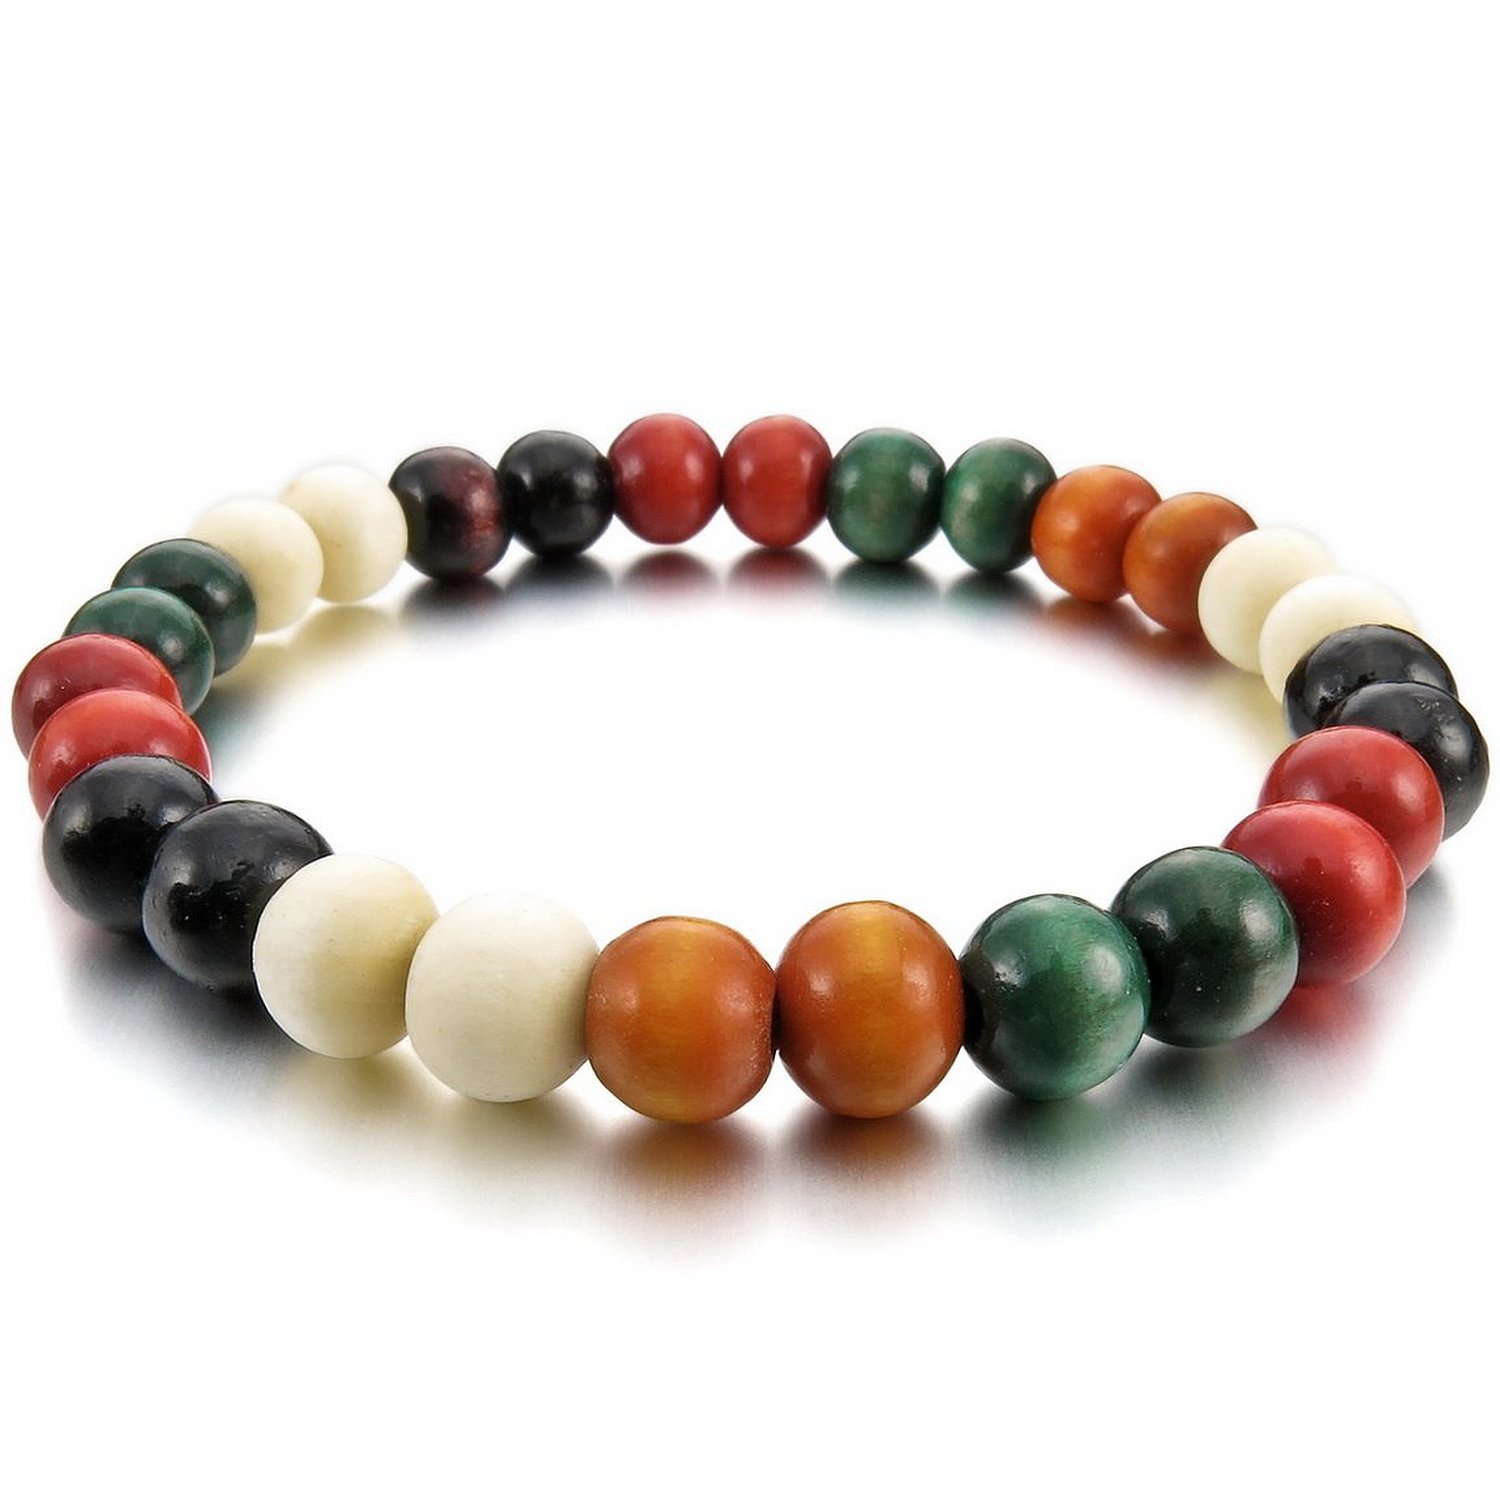 Bracelet bohème perles en bois blanc, marron, rouge et vert